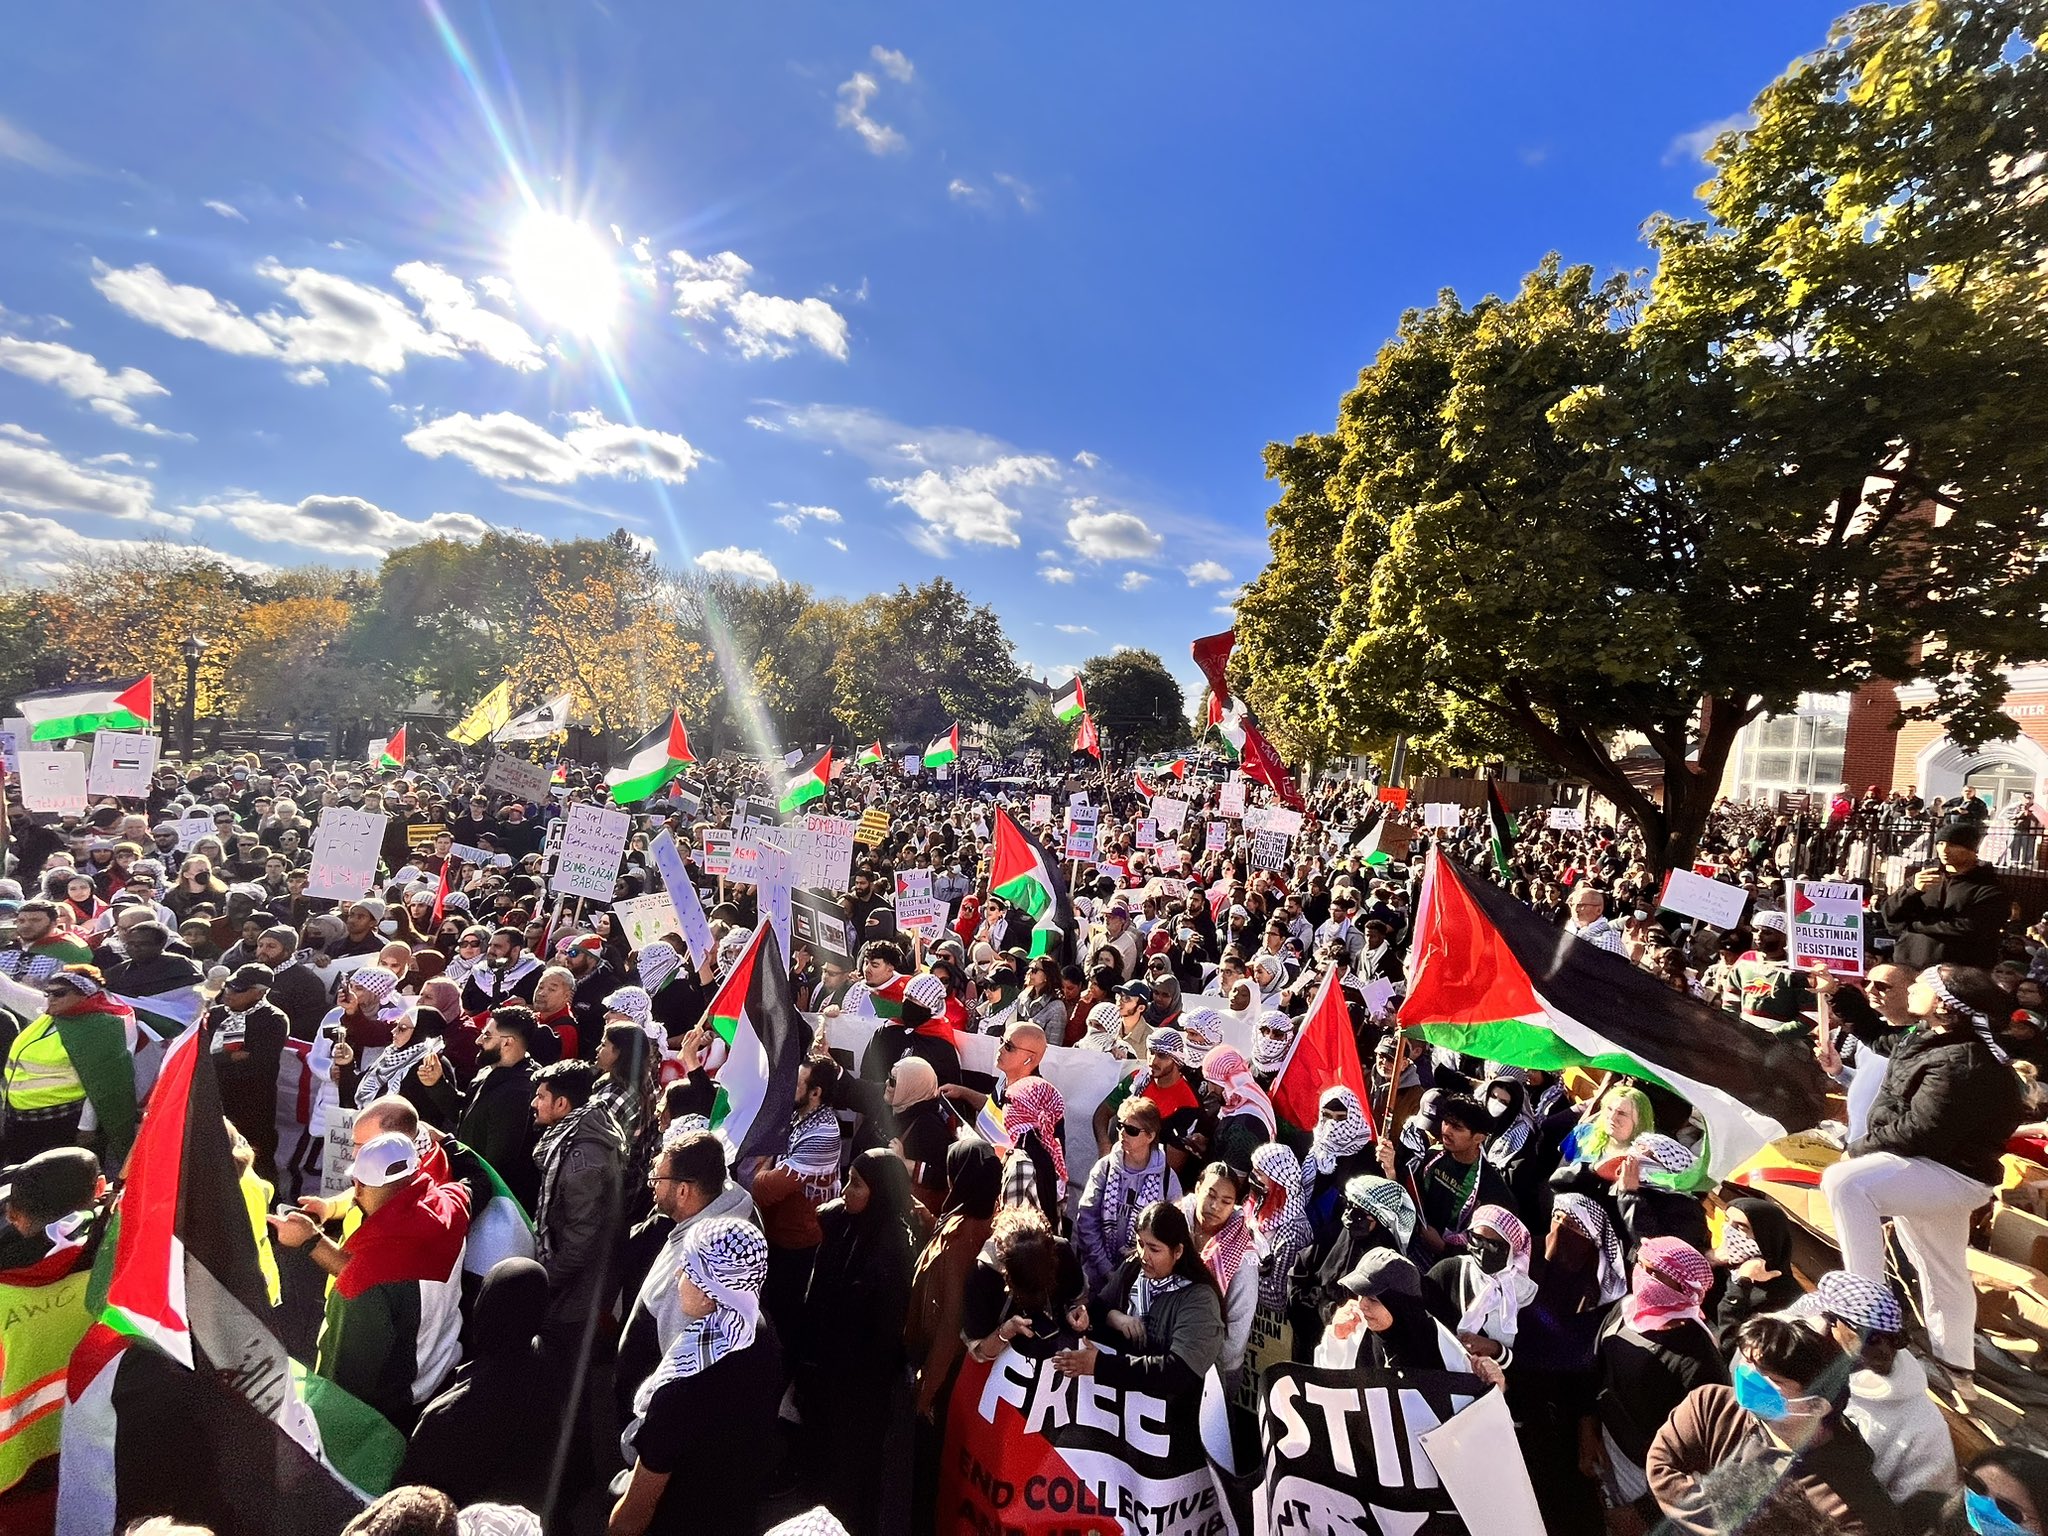 Des centaines de personnes arborant des drapeaux palestiniens et portant des pancartes et des banderoles pour une Palestine libre se tiennent sous un soleil radieux.